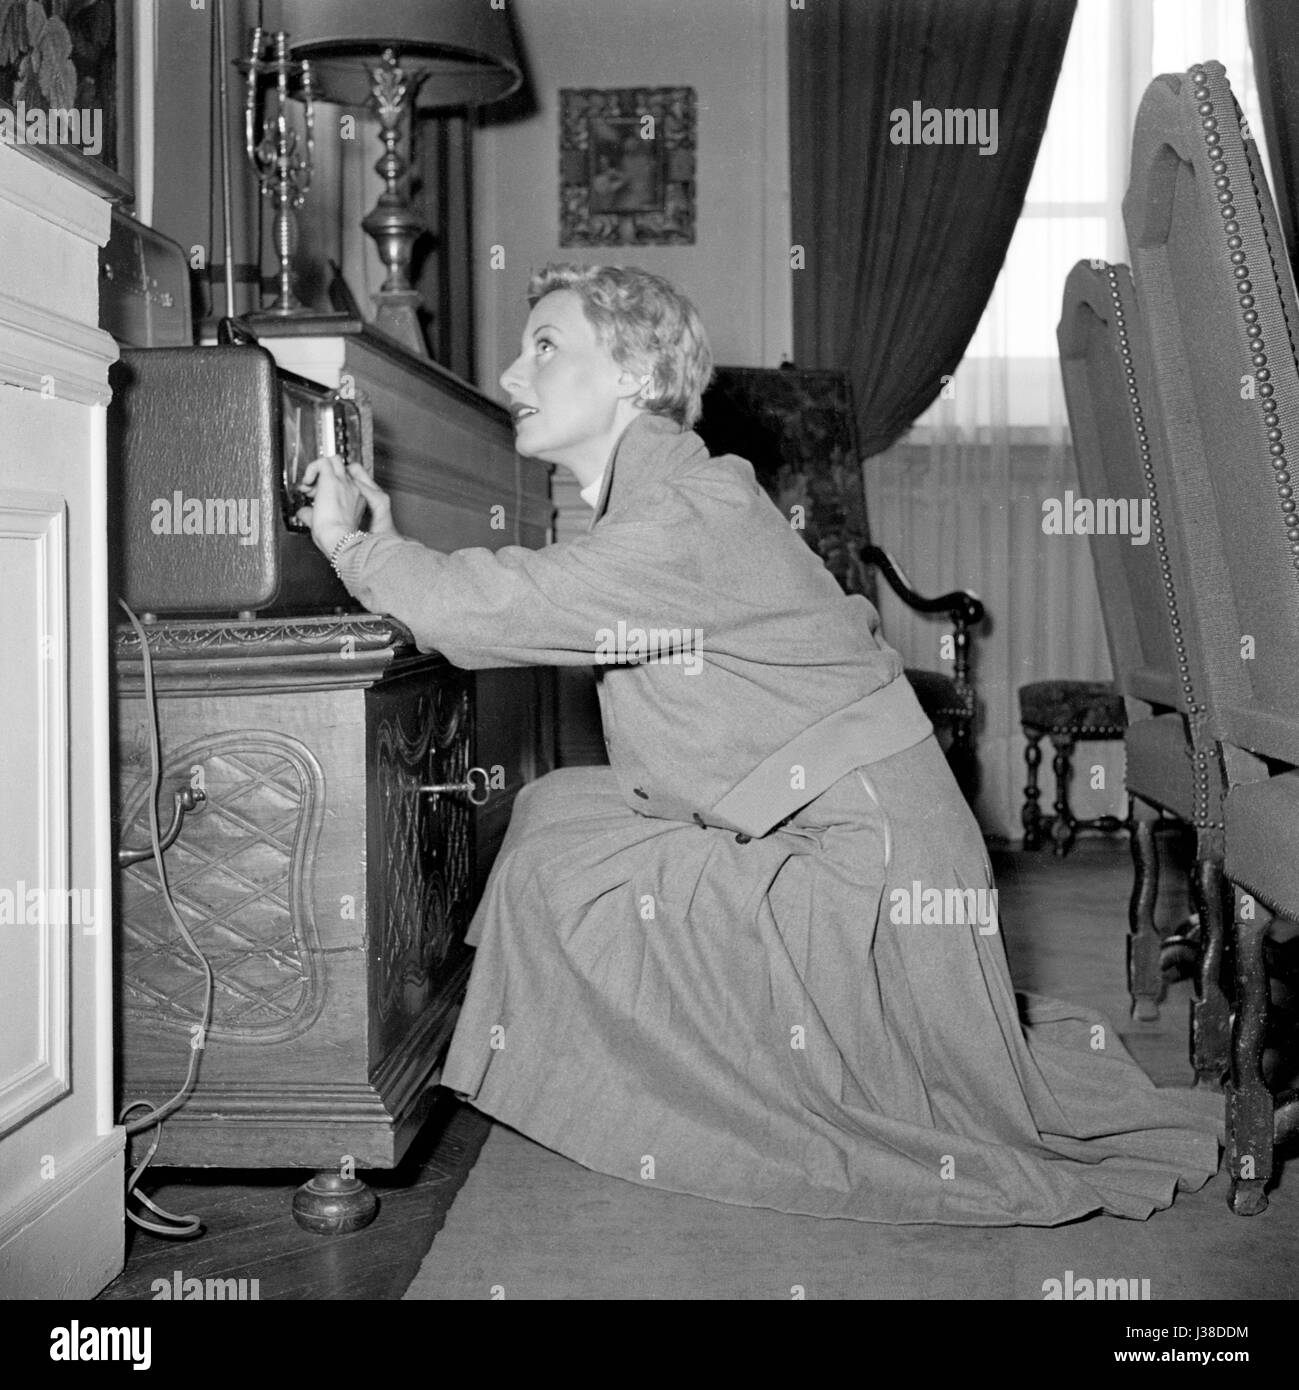 L'attrice francese Michèle Morgan nel 1954, nel suo appartamento situato  all'ultimo piano dell'Hotel Lambert a Parigi. Ella ci vive con suo marito  Henri Vidal fino al 1976. Foto Georges Rétif de la